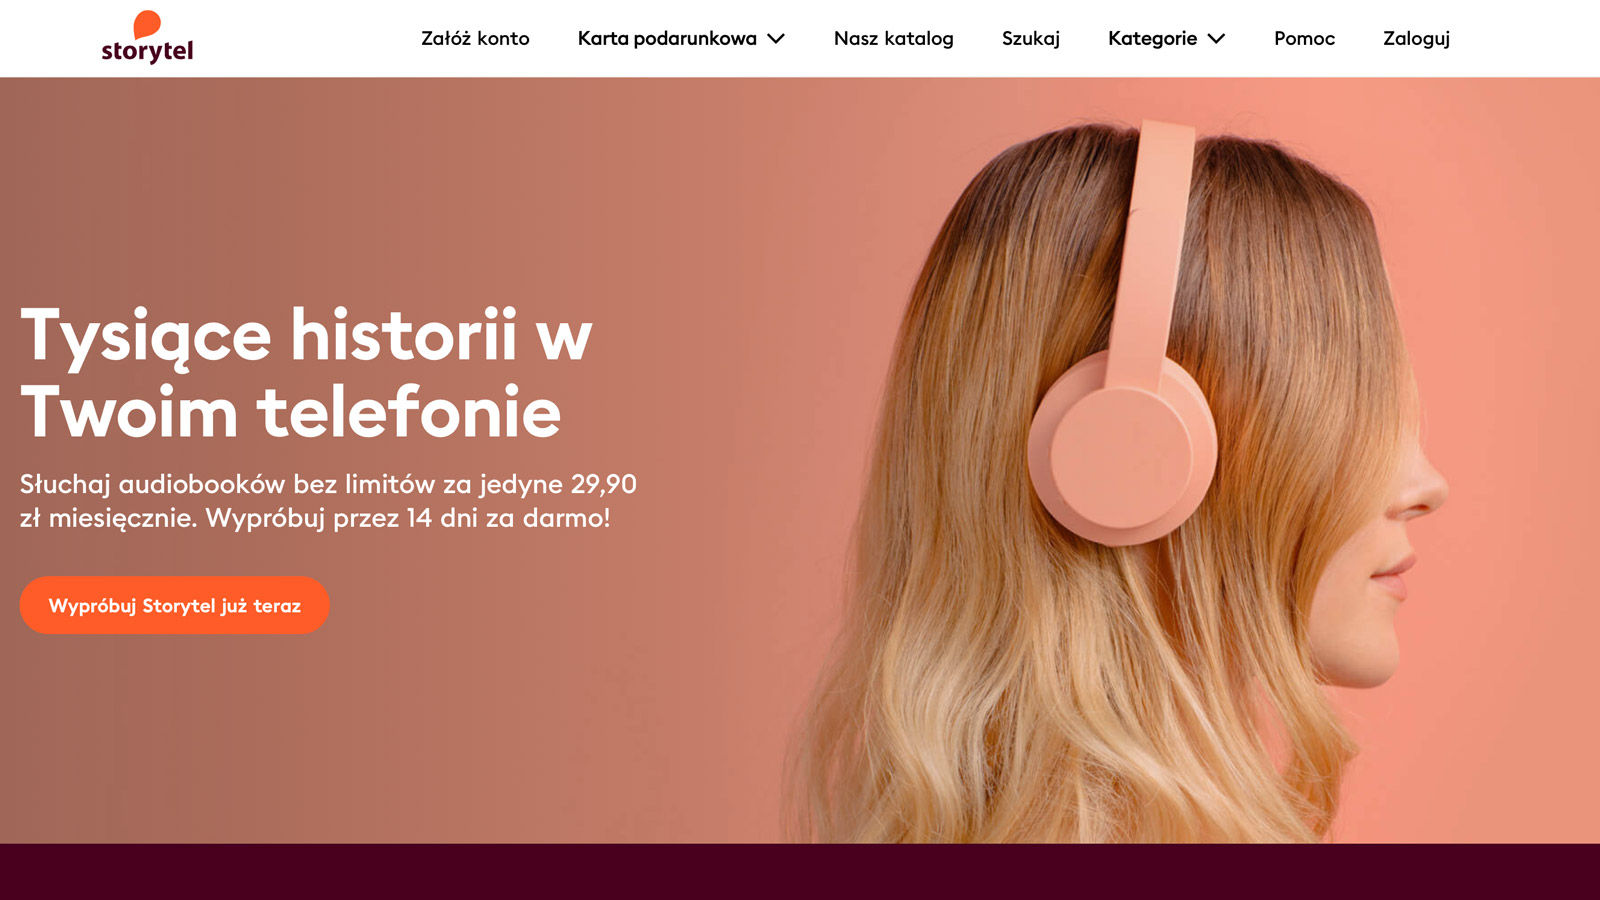 Storytel zaczyna współpracę z kolejnym artystą! audiobooki mediarun storytel 2019